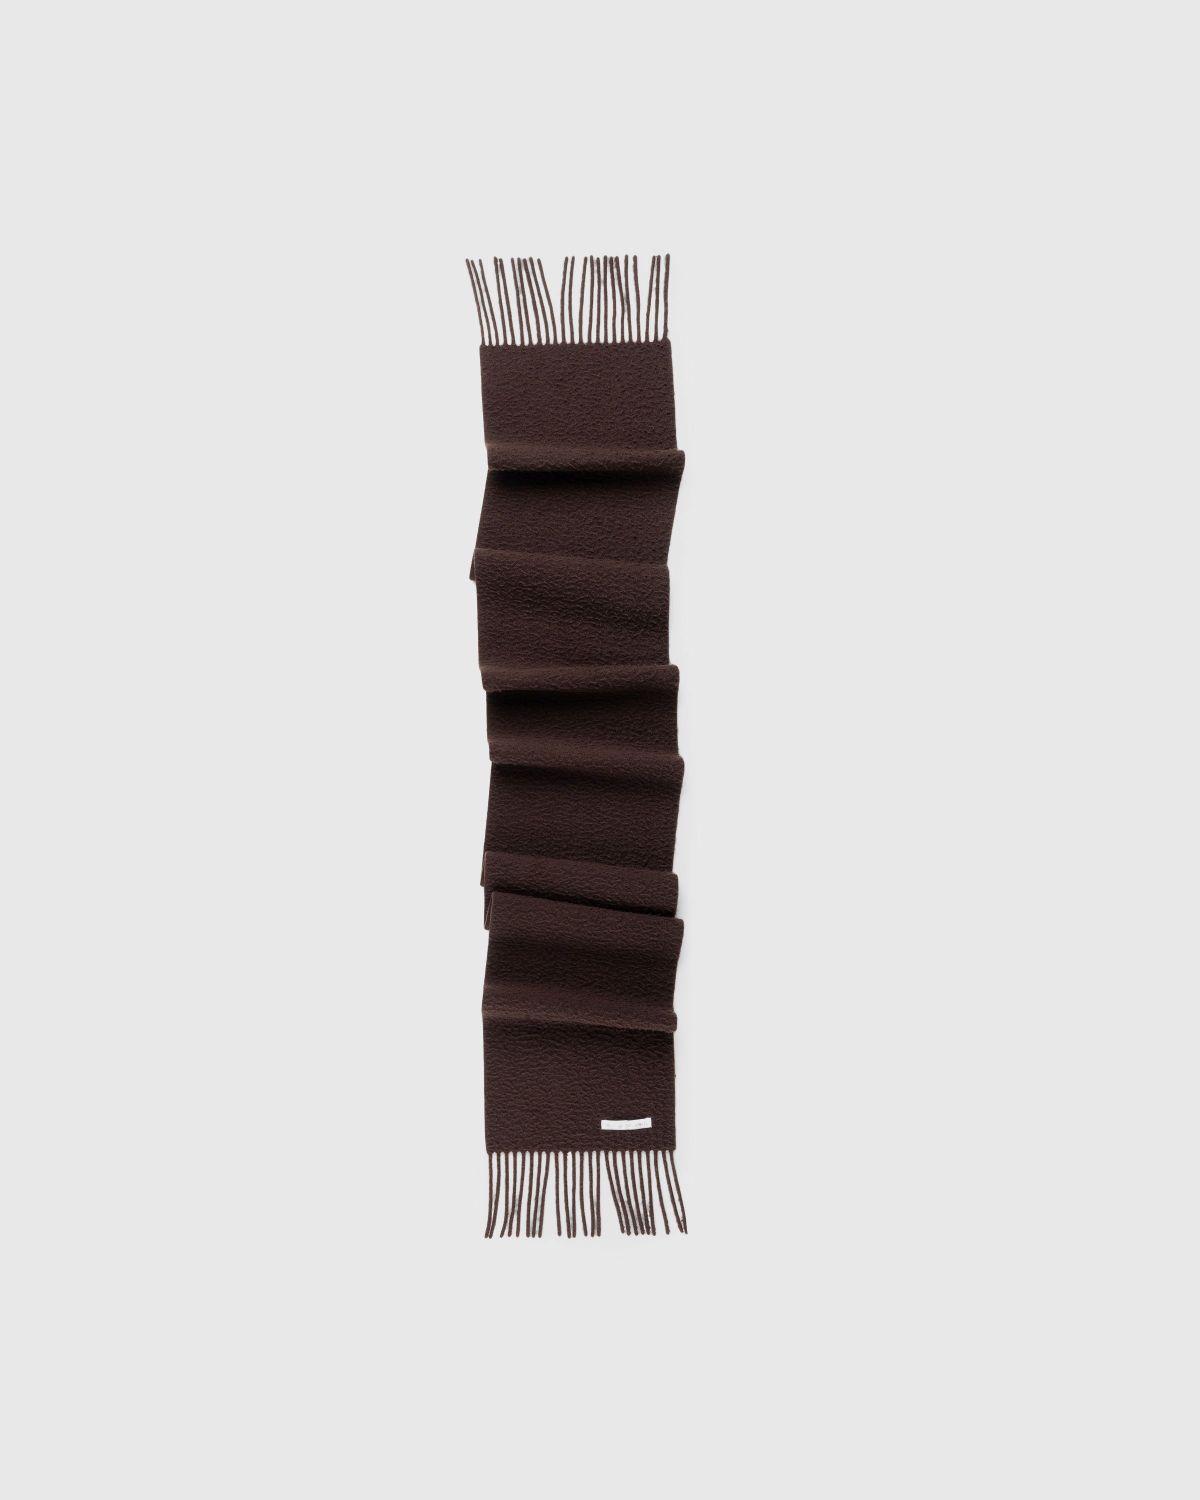 Acne Studios – Wool Fringe Scarf Chocolate Brown - Scarves - Brown - Image 1